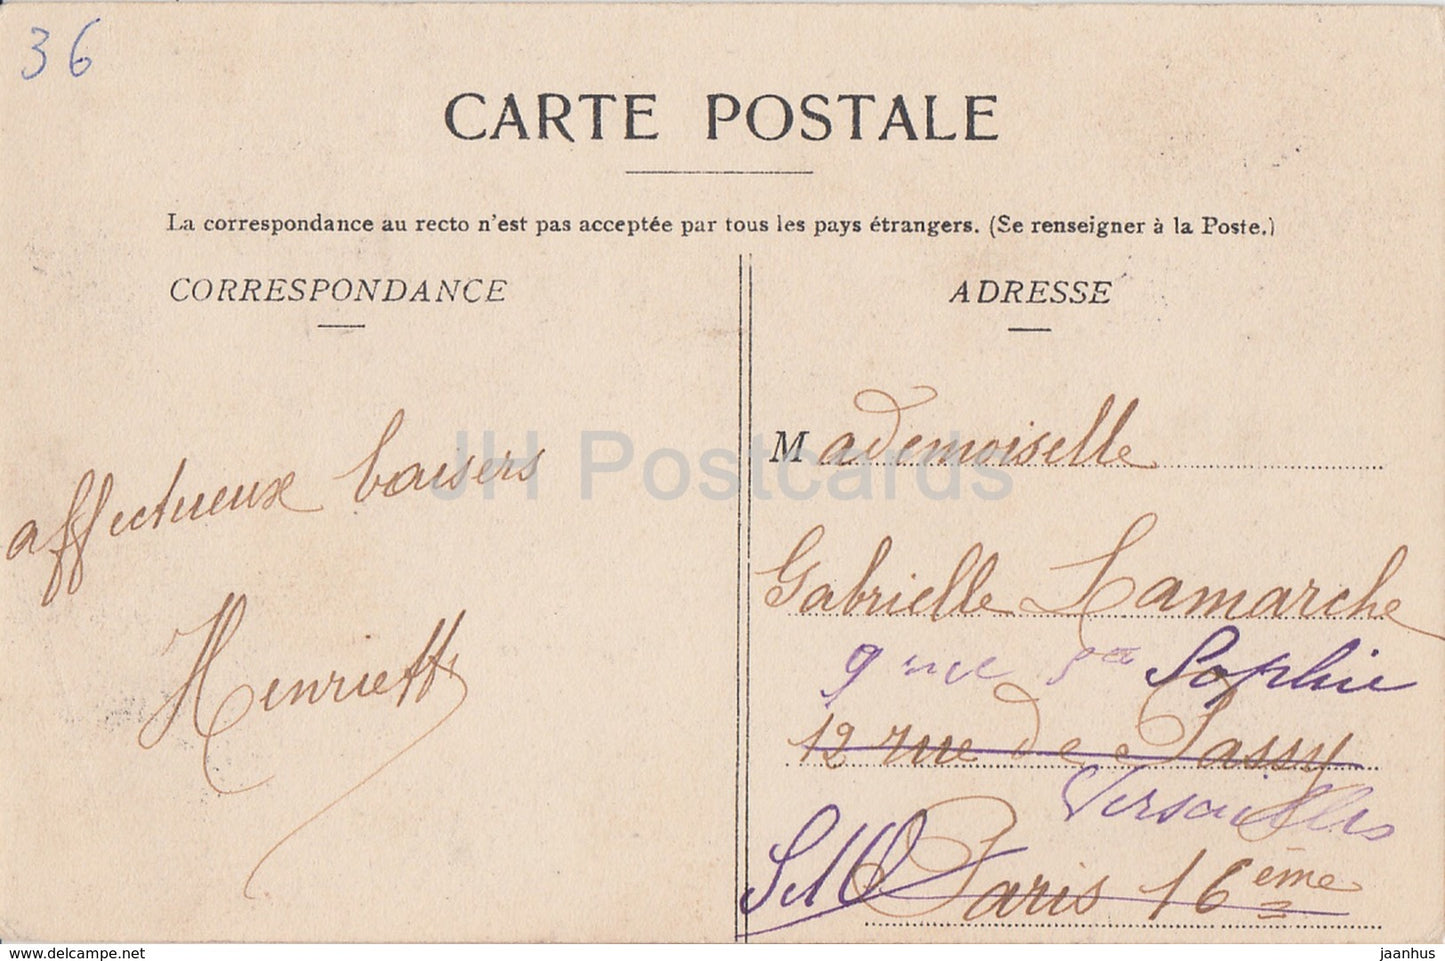 Moulins sur Cephons - Château du Pin - château - carte postale ancienne - 1905 - France - occasion